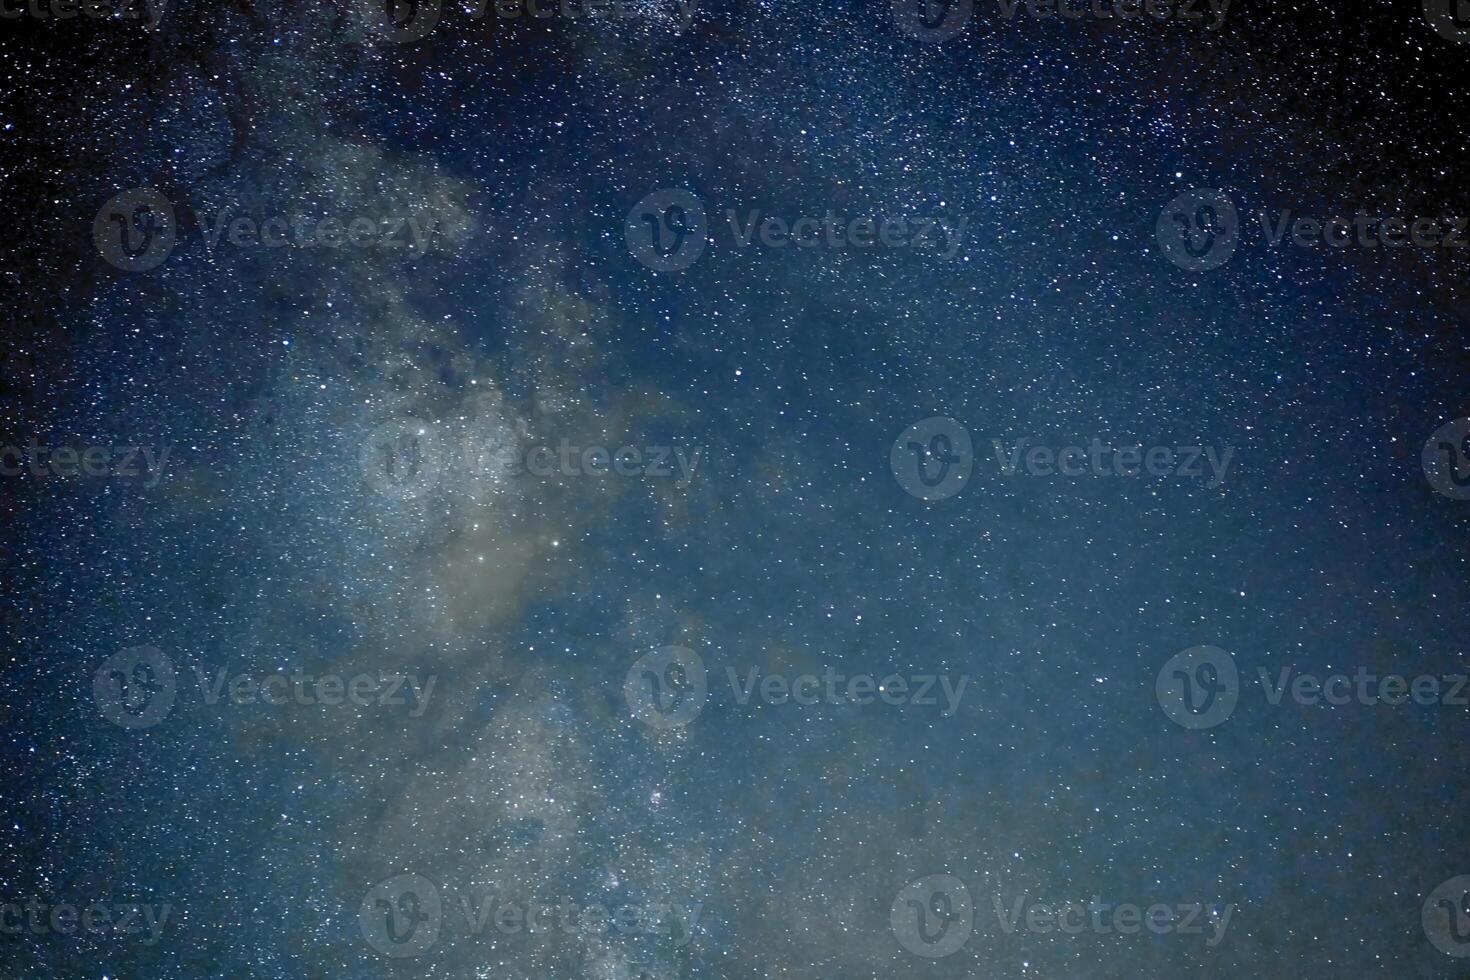 lechoso camino galaxia estrellas espacio polvo en el universo, largo exposición fotografía, con grano. foto